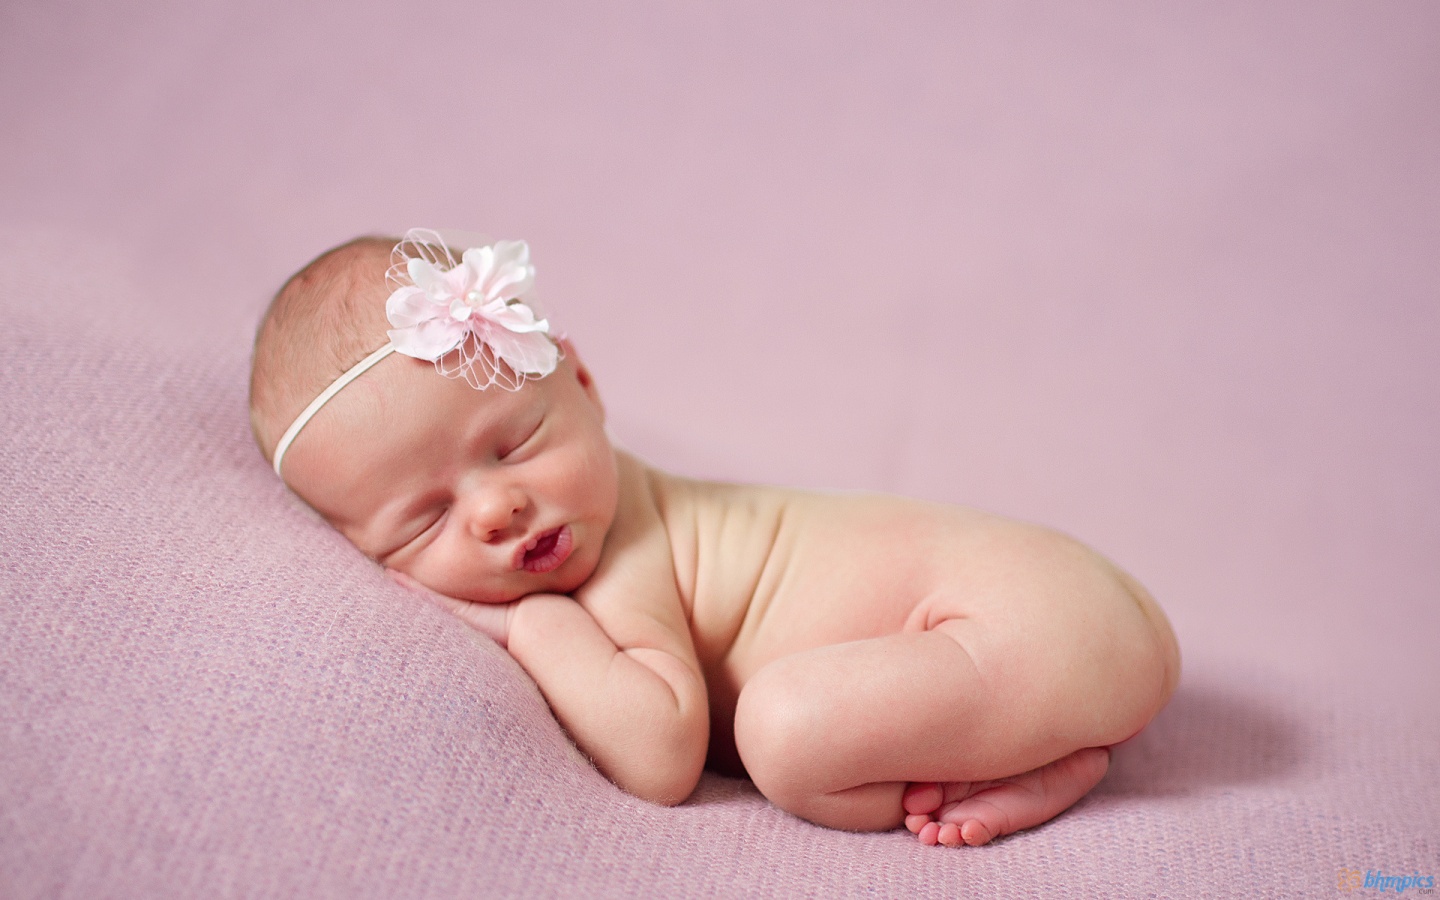 Cute Baby Sweet HD Wallpaper In 1080p Super